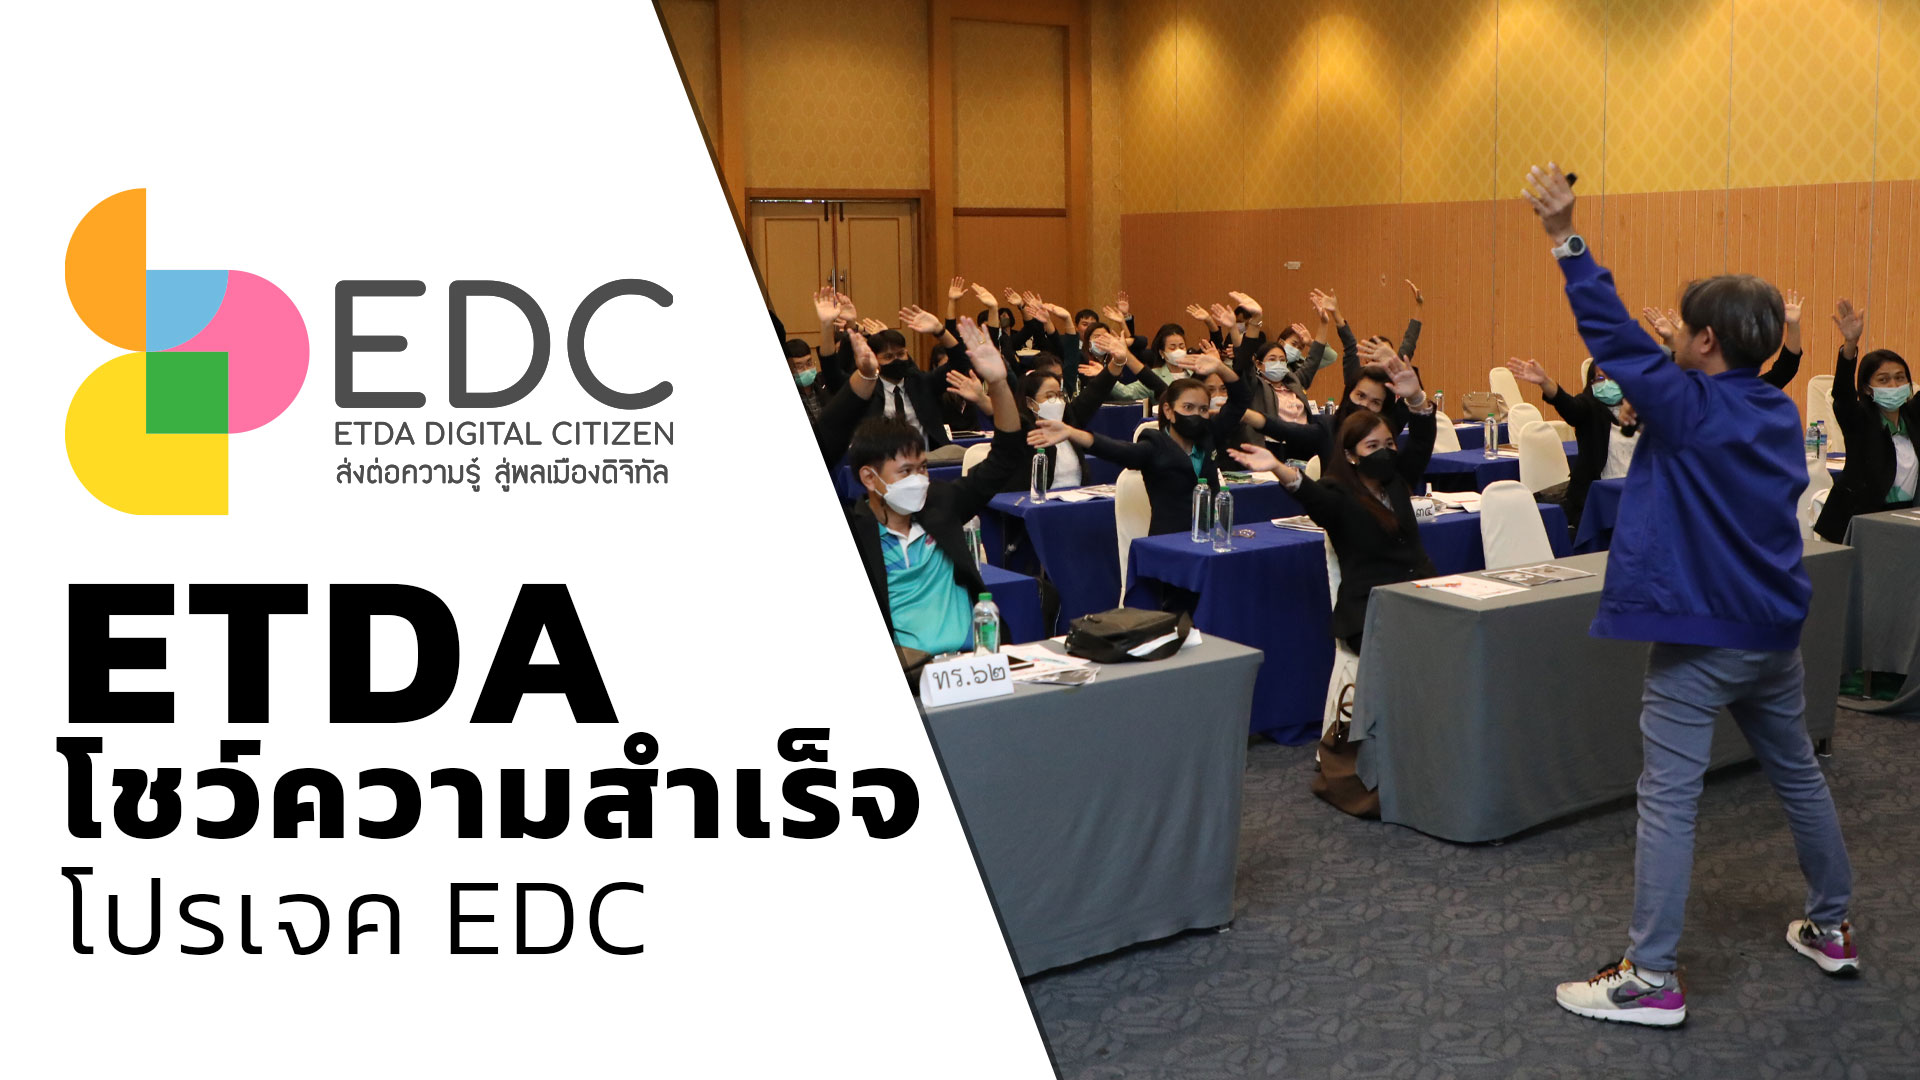 ETDA โชว์ความสำเร็จโปรเจค EDC  เสริมภูมิคนไทยรู้เท่าทันออนไลน์ 5,743 คน  สร้างเทรนเนอร์ดิจิทัล ส่งต่